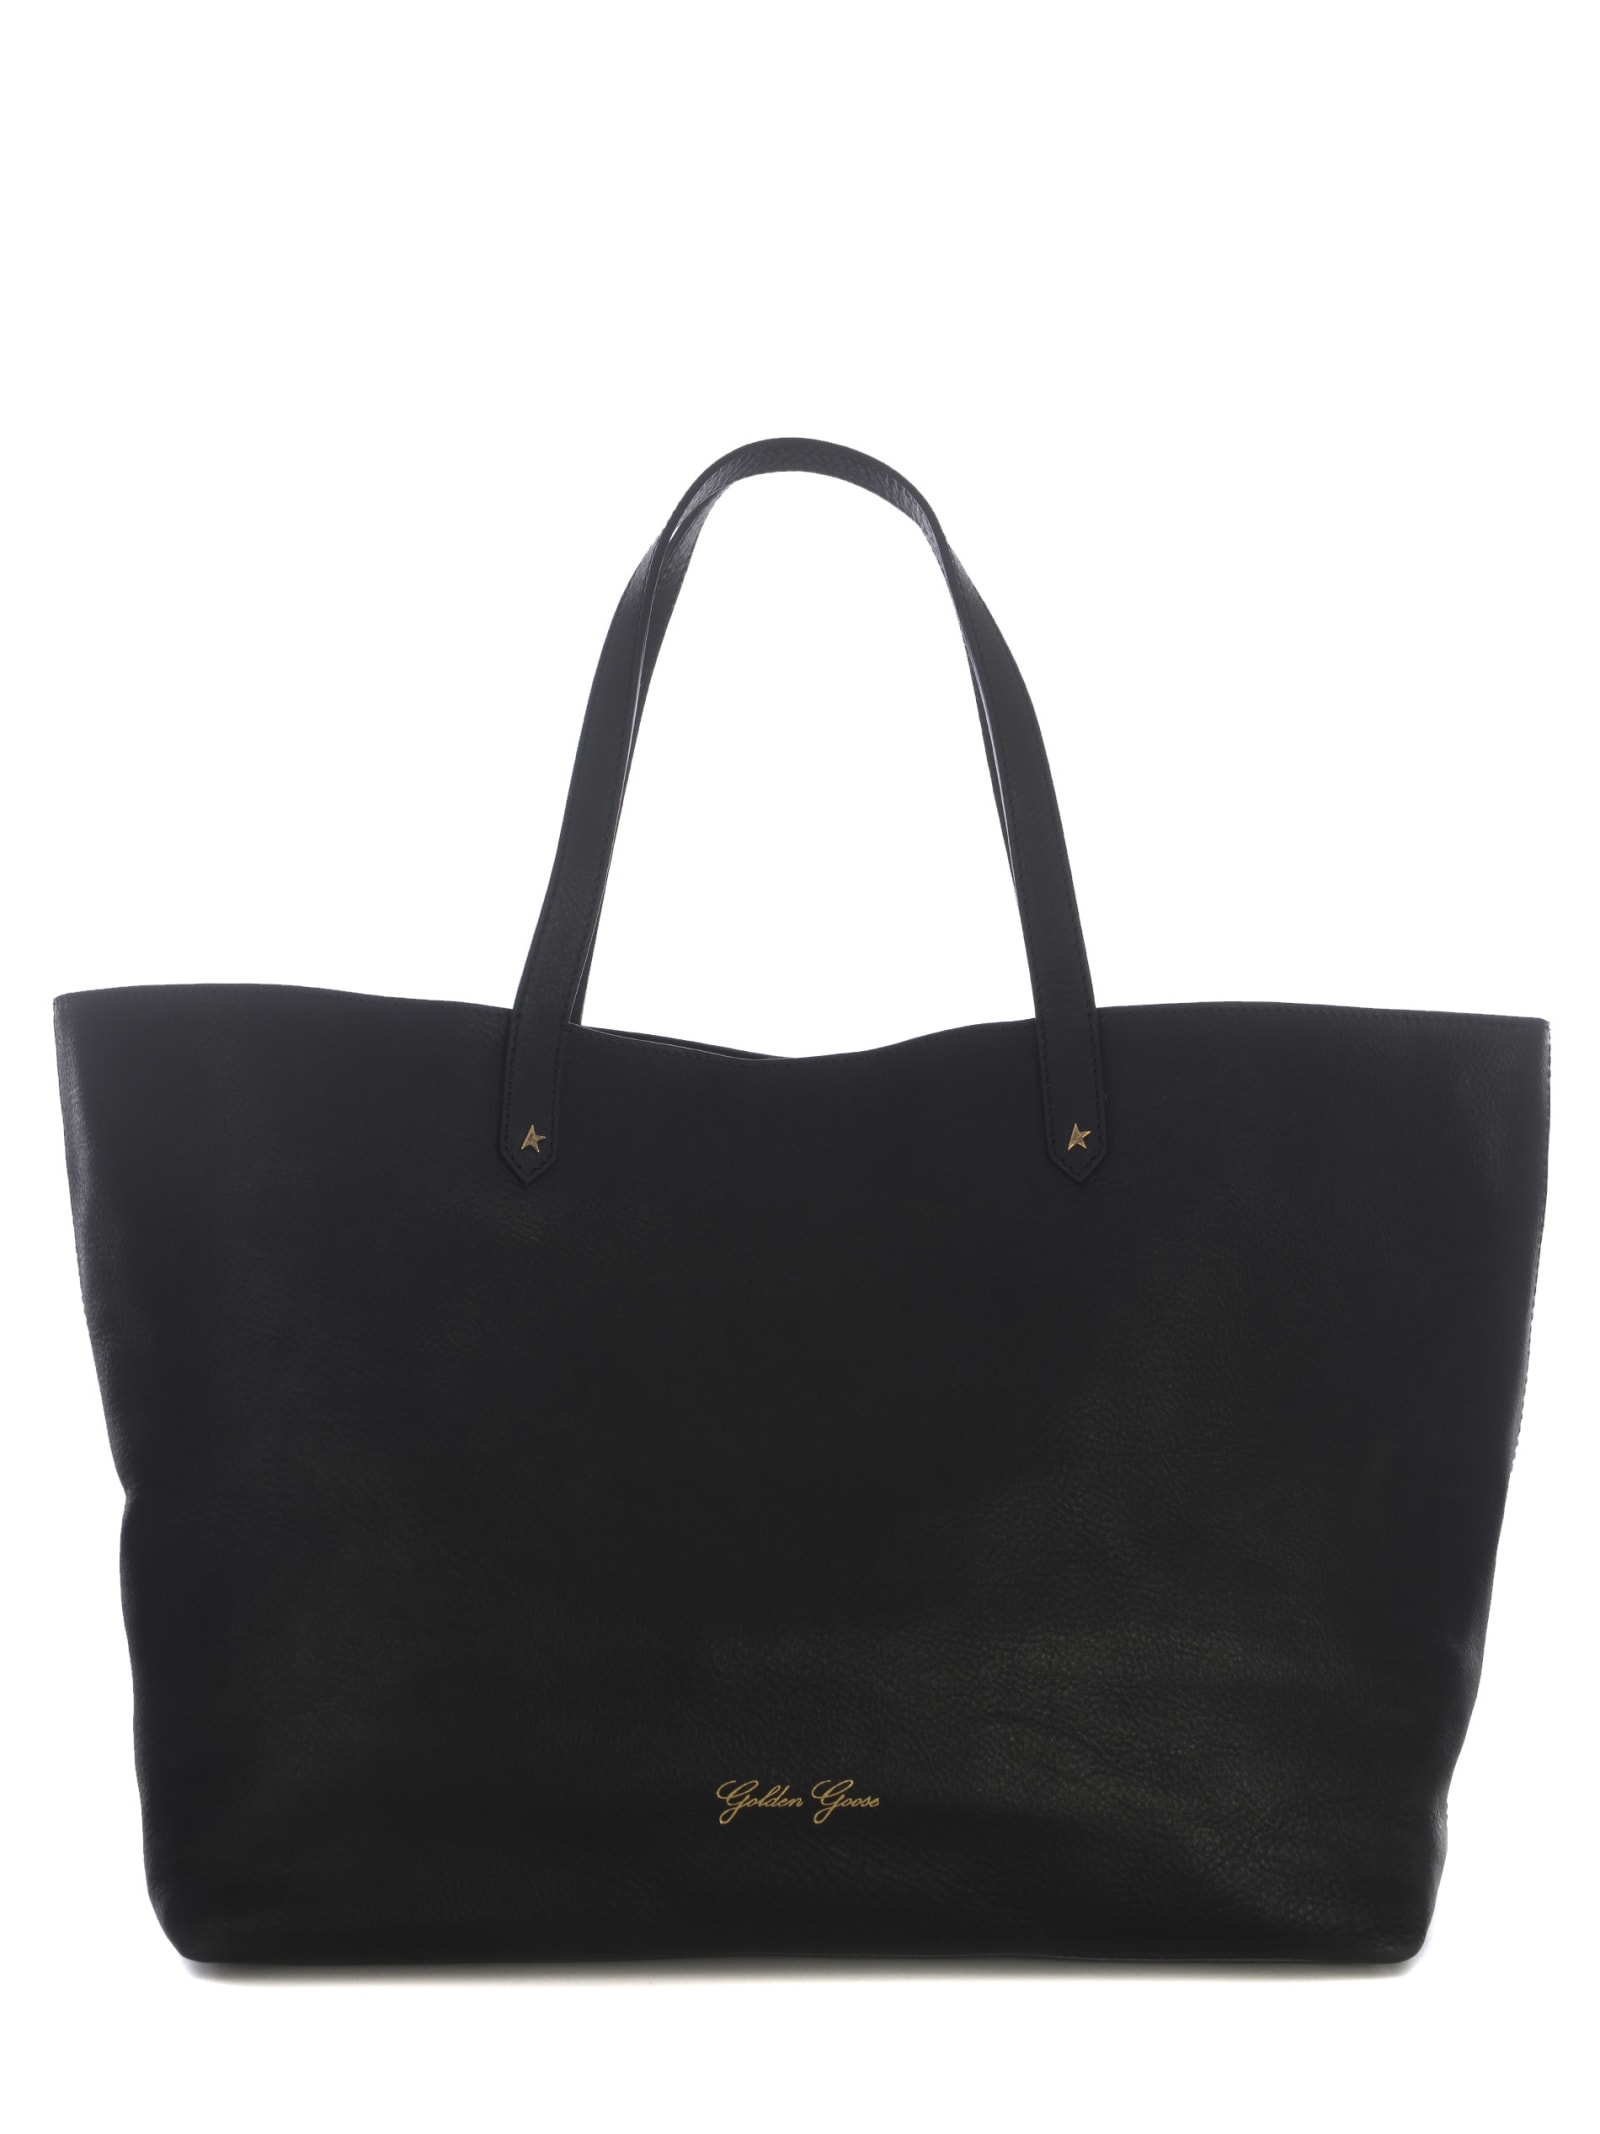 Shop Golden Goose Bag  Pasadena Made Of Leather In Black